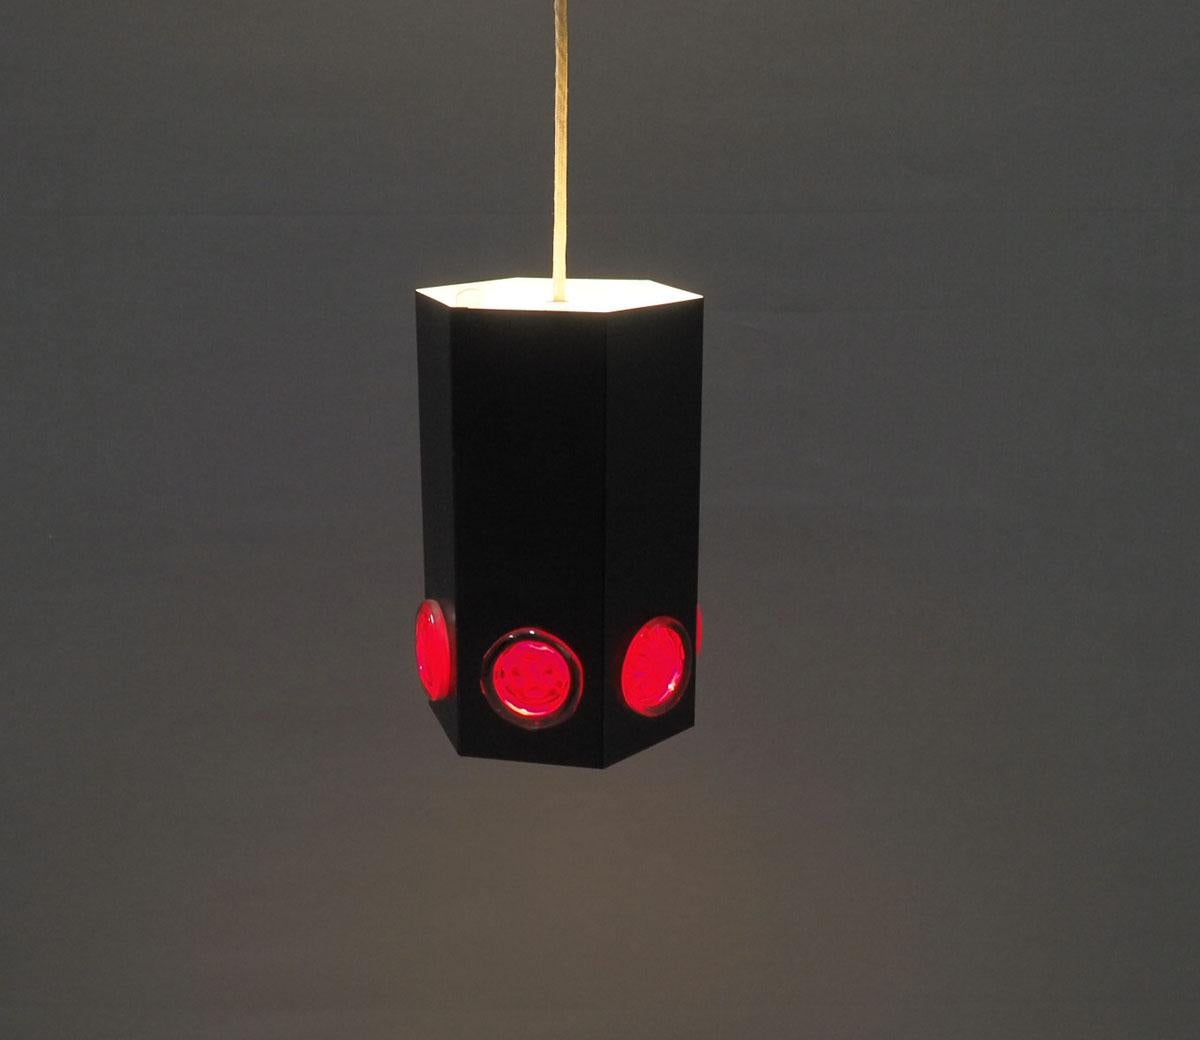  Rare lampe en forme de cylindre en métal peint par poudrage noir des années 1960 produite par Holm Sorensen.

La lampe a 6 coins et un cercle de verre rouge sur chaque surface en bas.

L'intérieur est blanc, la lampe donne un effet de lumière